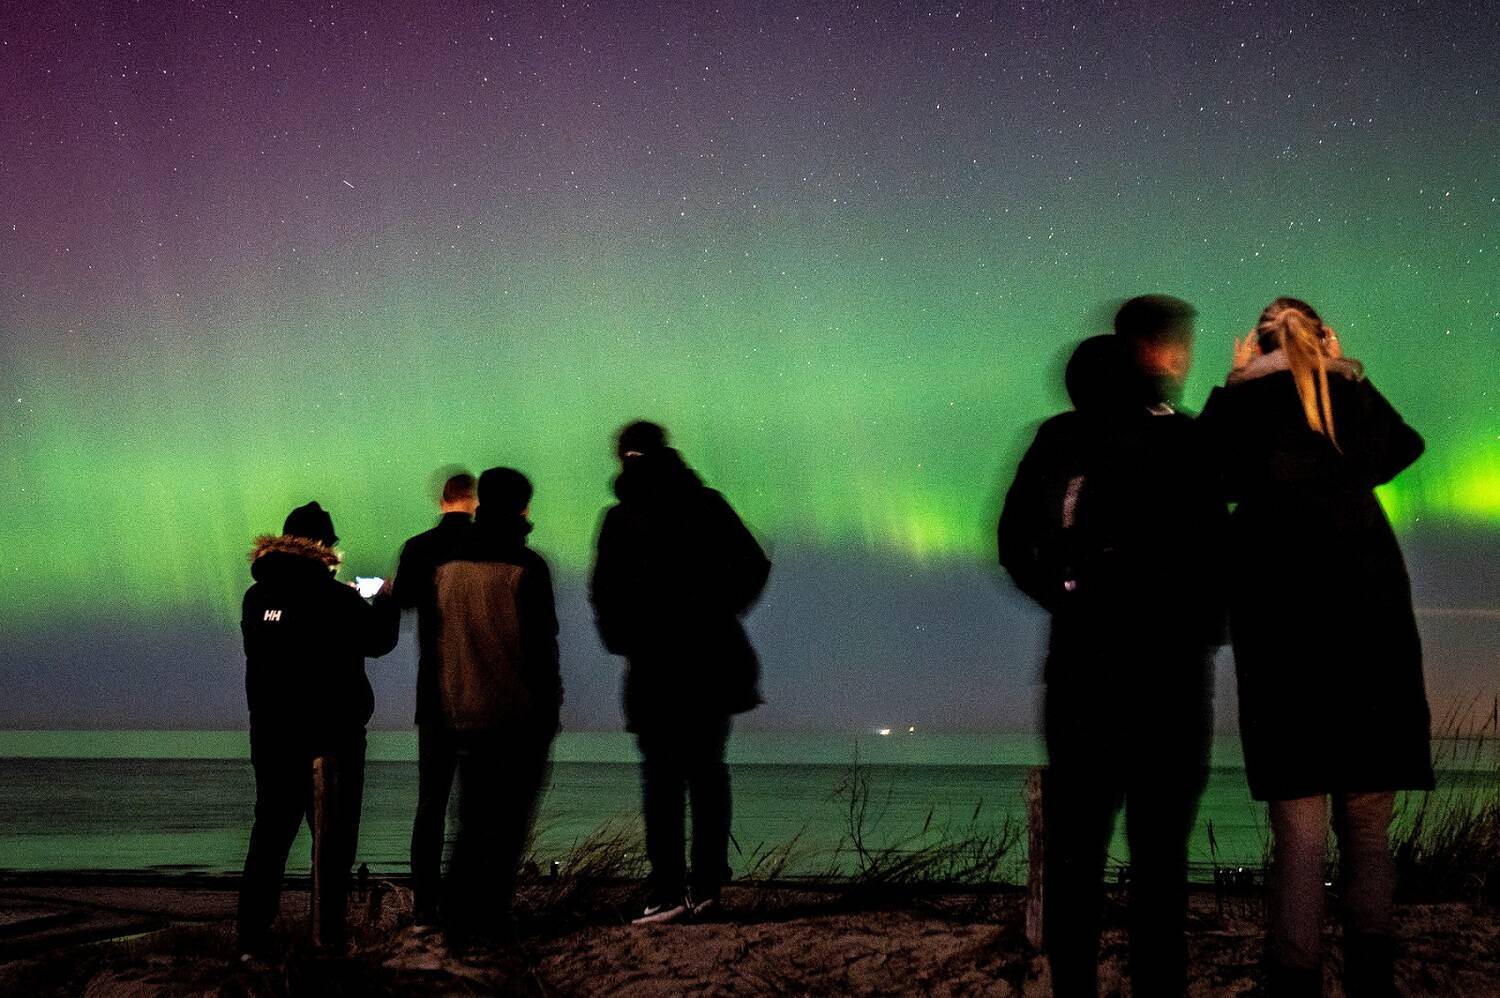 Em rara aparição, aurora boreal é vista nos céus do Reino Unido, Mundo